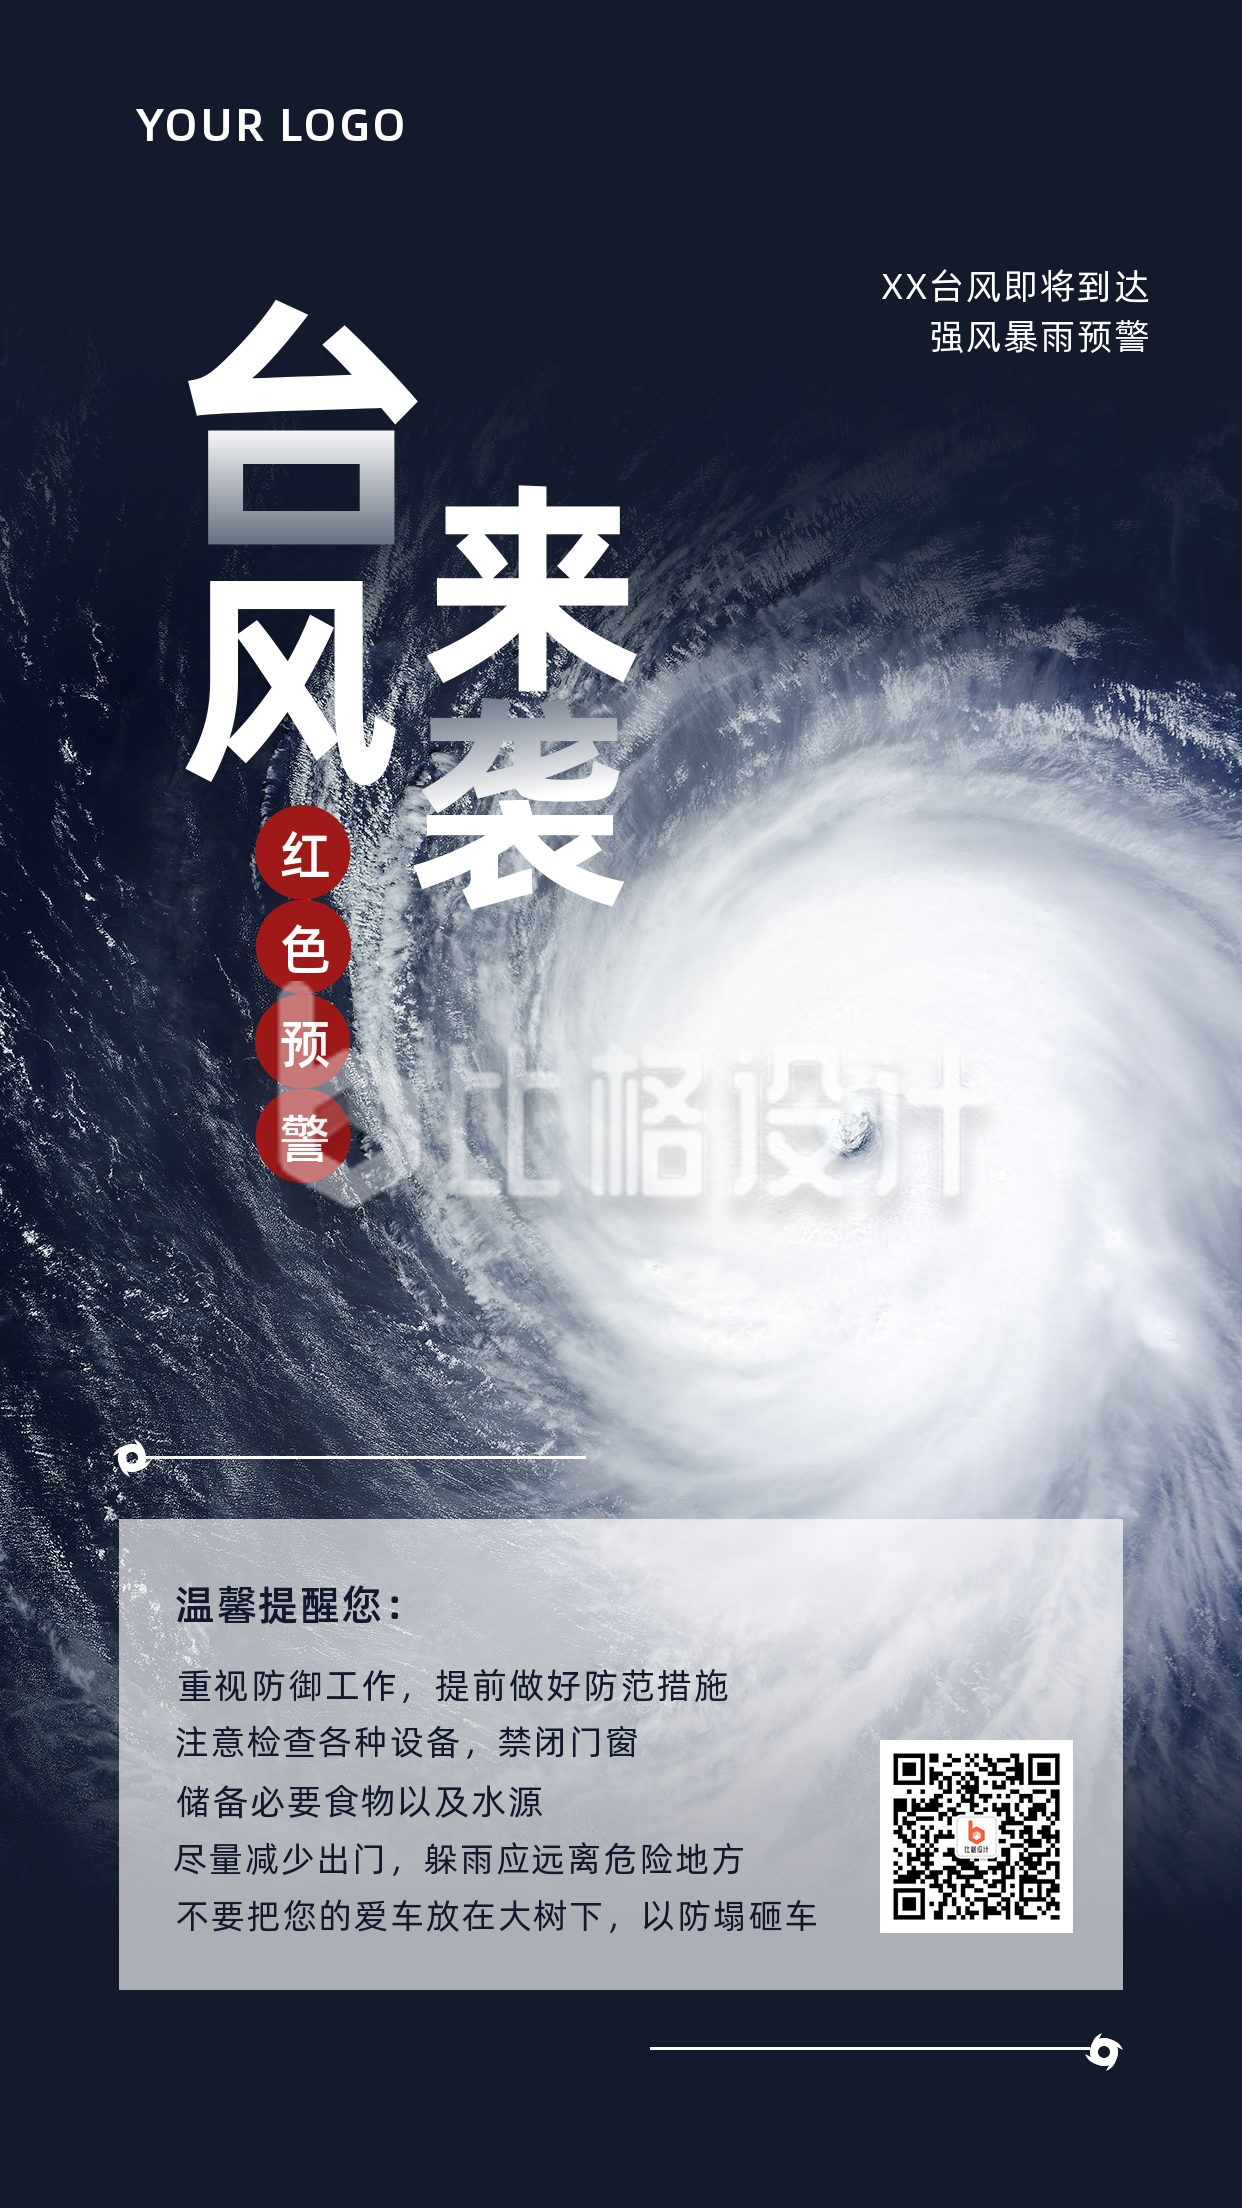 自然灾害台风来袭温馨提示实景手机海报